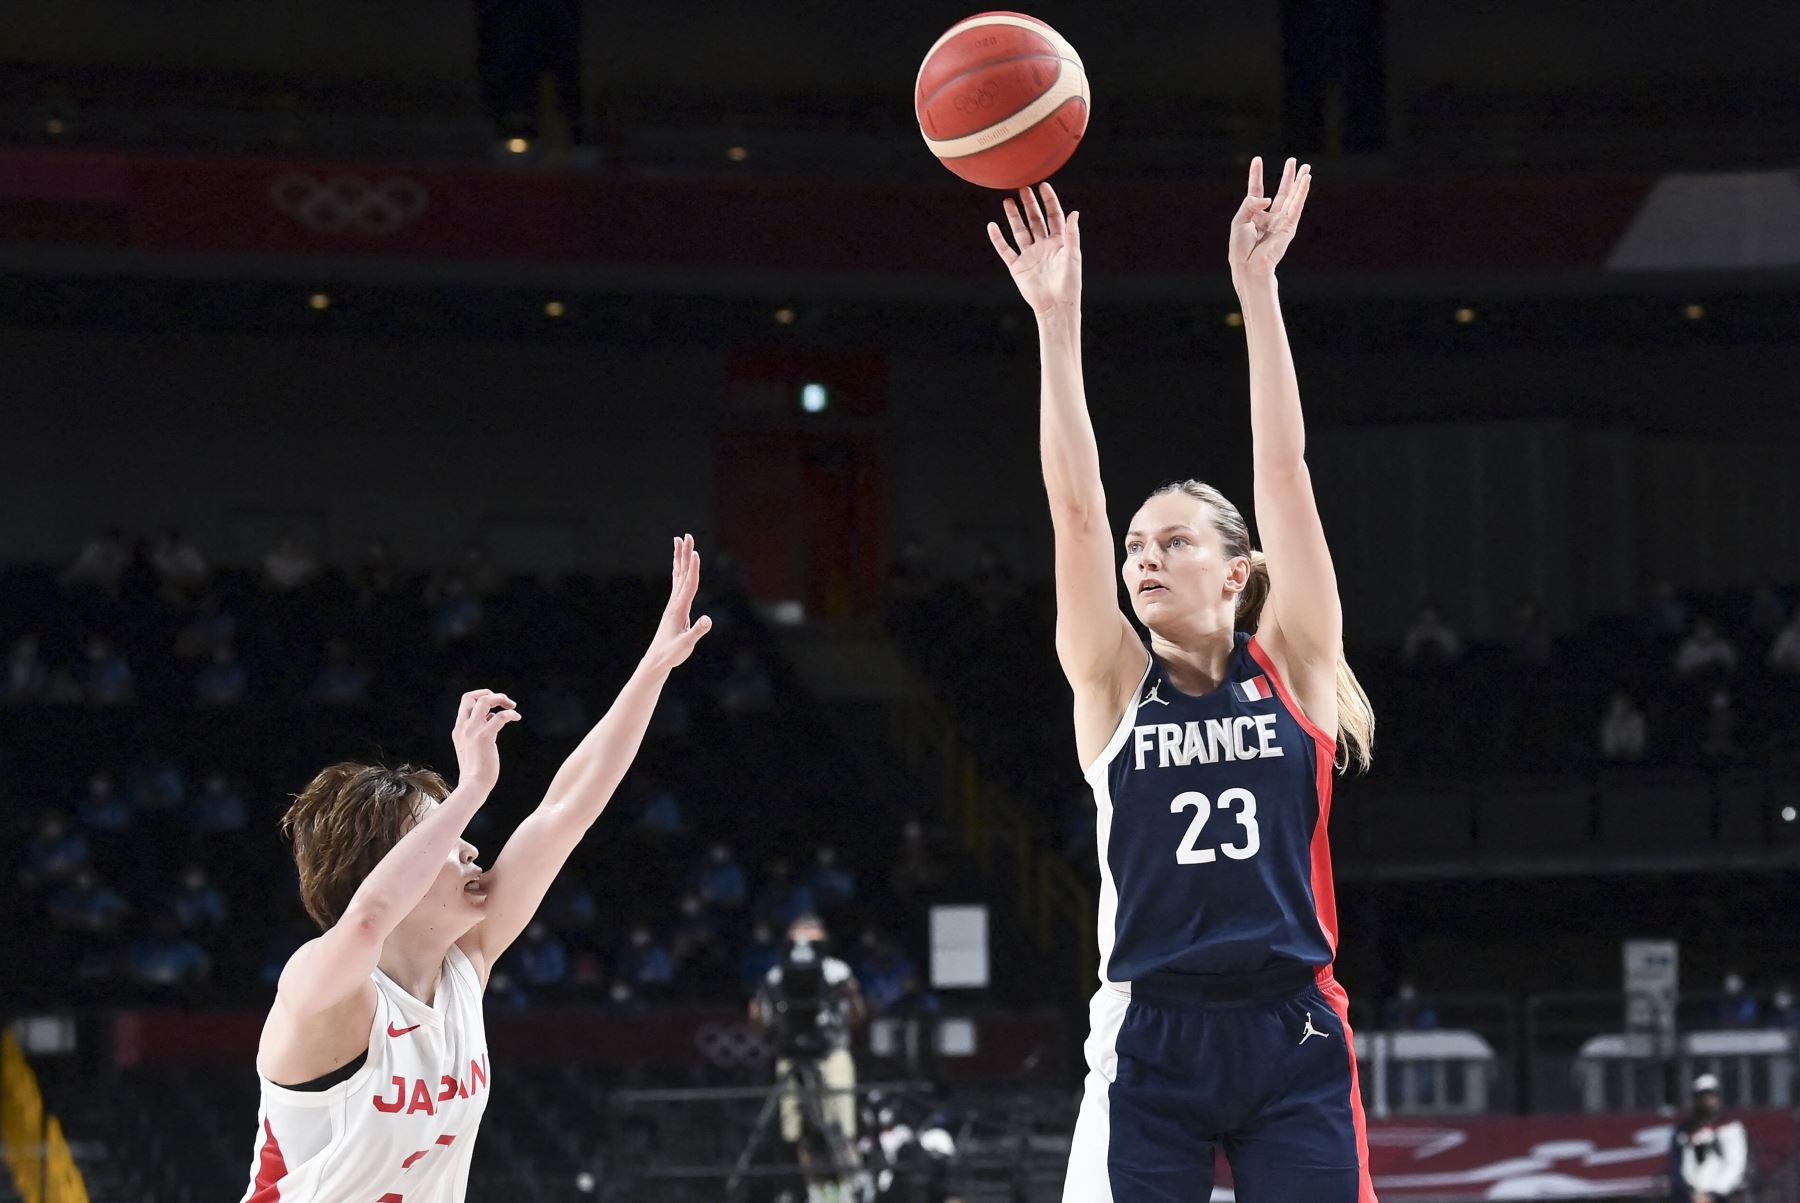 La francesa Marine Johannes en acción durante la semifinal femenina de baloncesto entre Japón y Francia por los Juegos Olímpicos de Tokio 2020, en el Saitama Super Arena, en Saitama. Foto: AFP